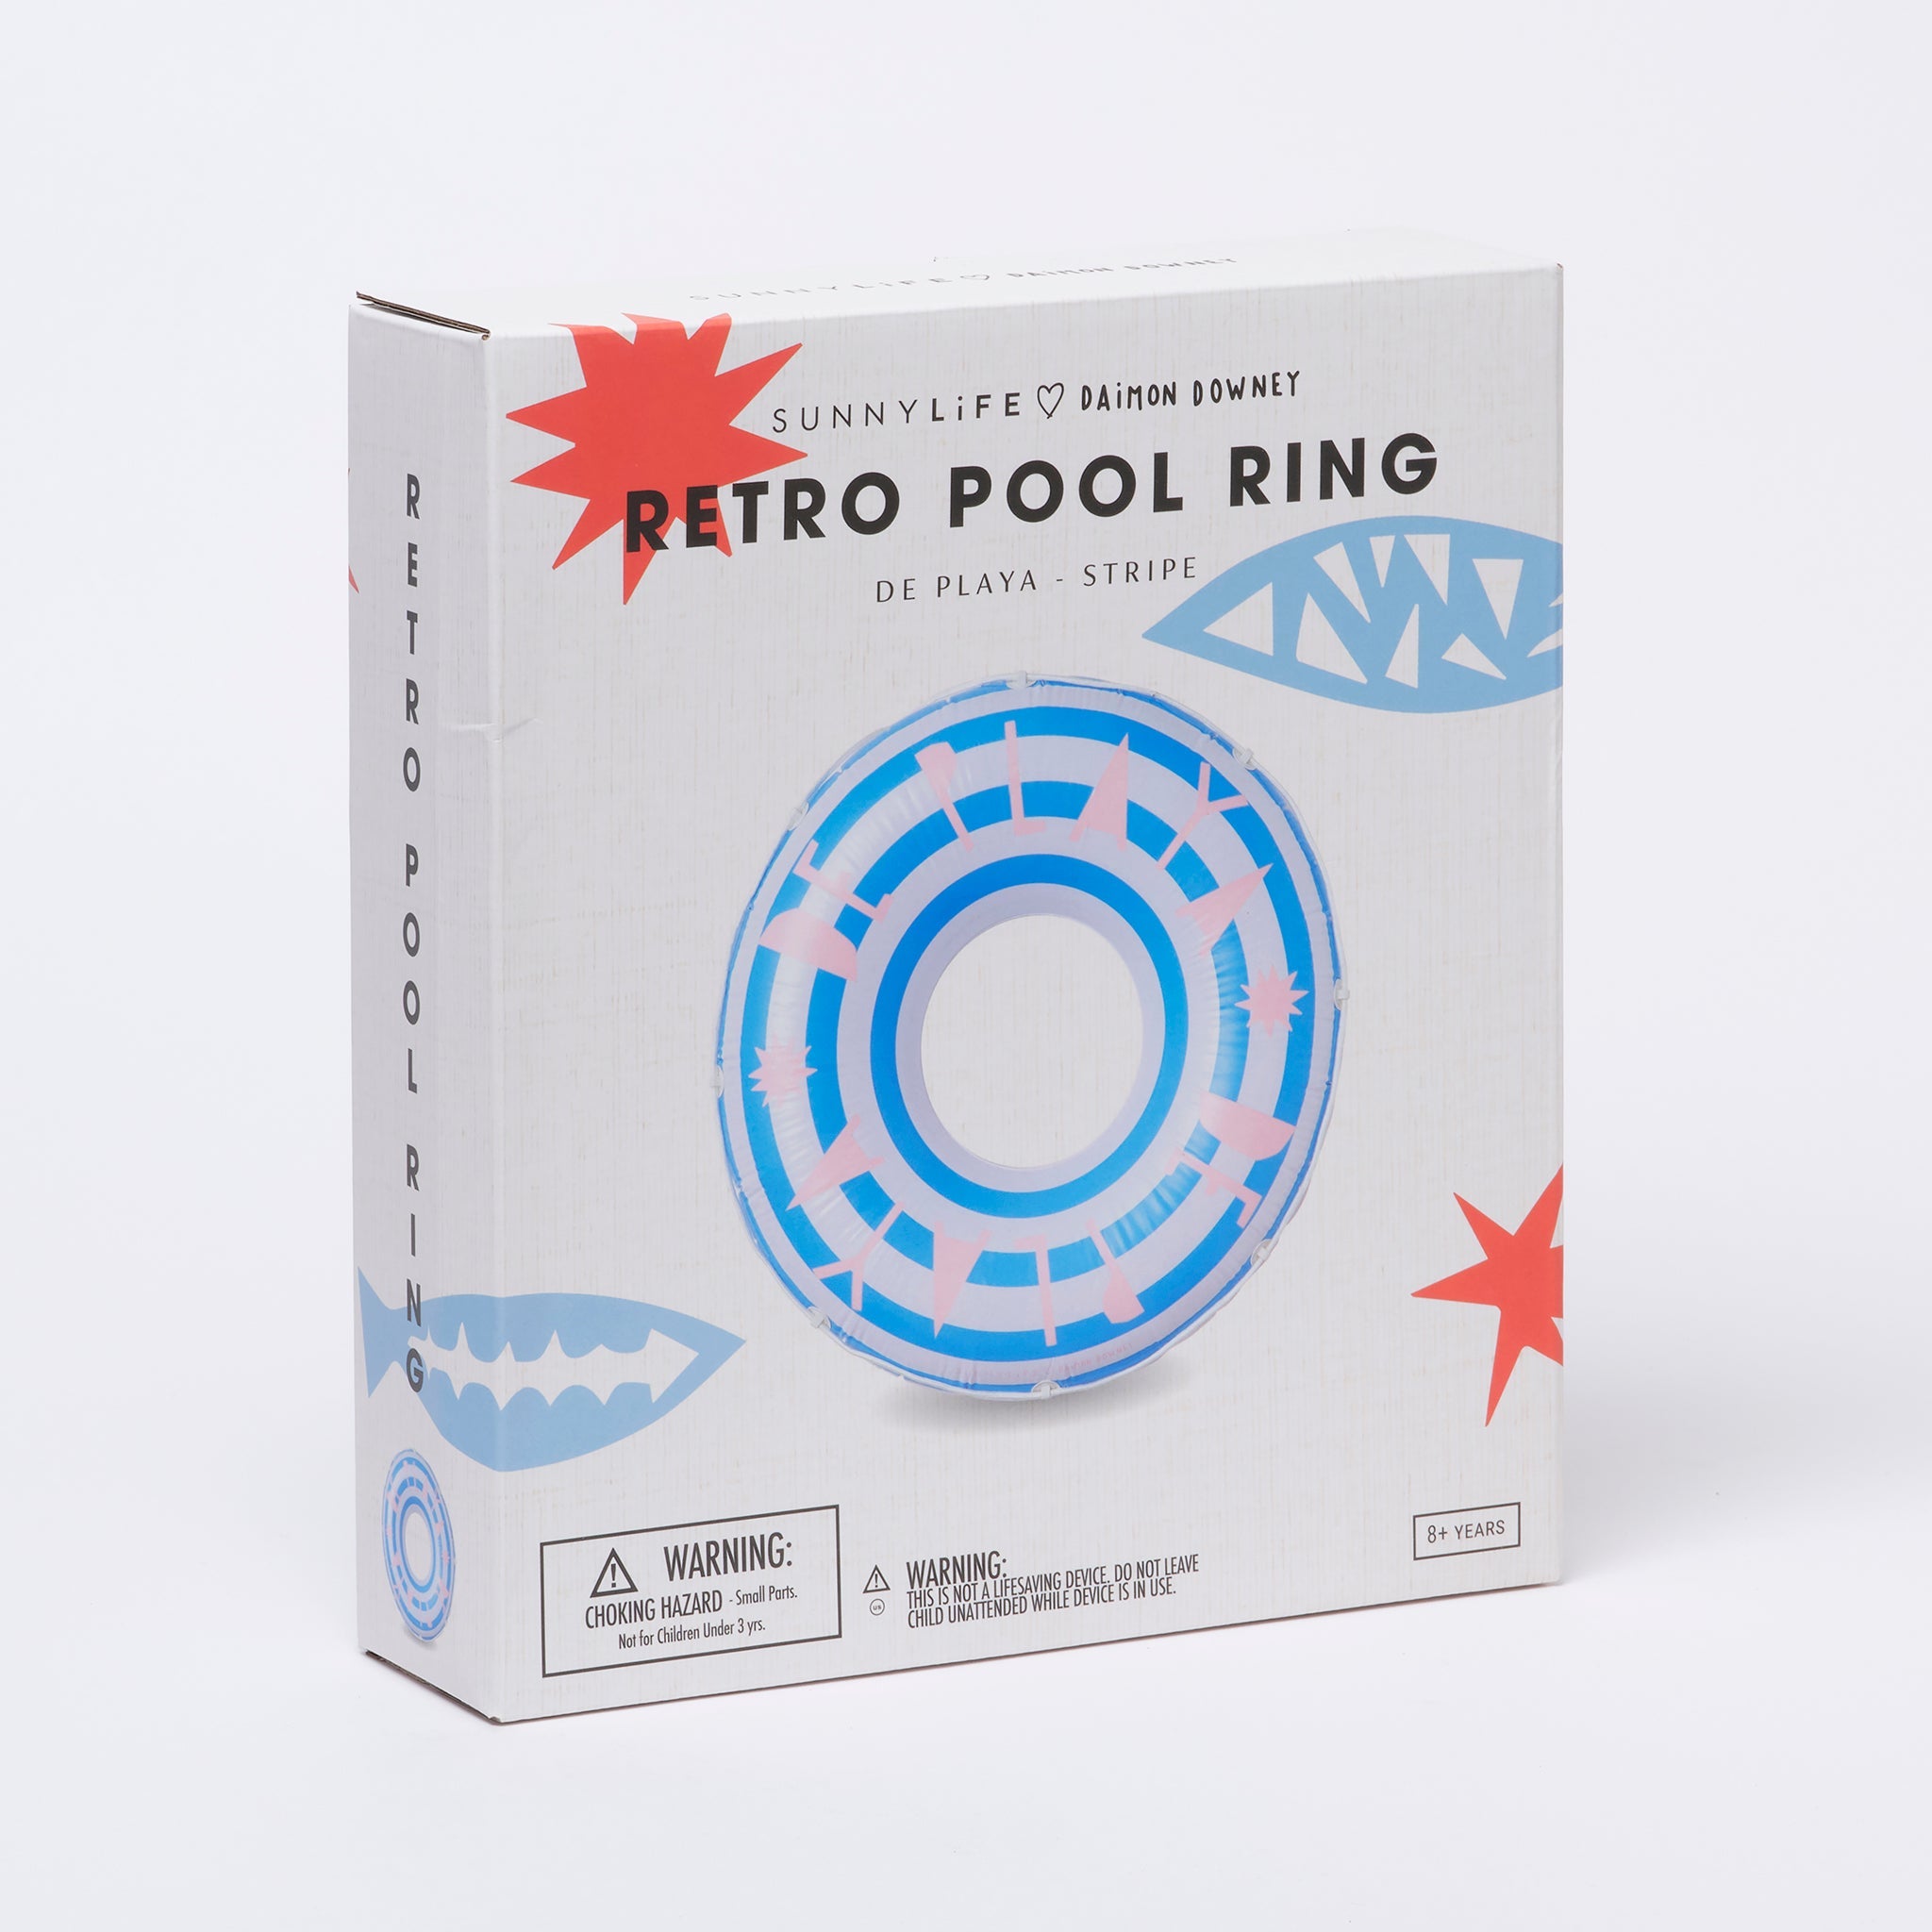 SUNNYLiFE | Retro Pool Ring | De Playa